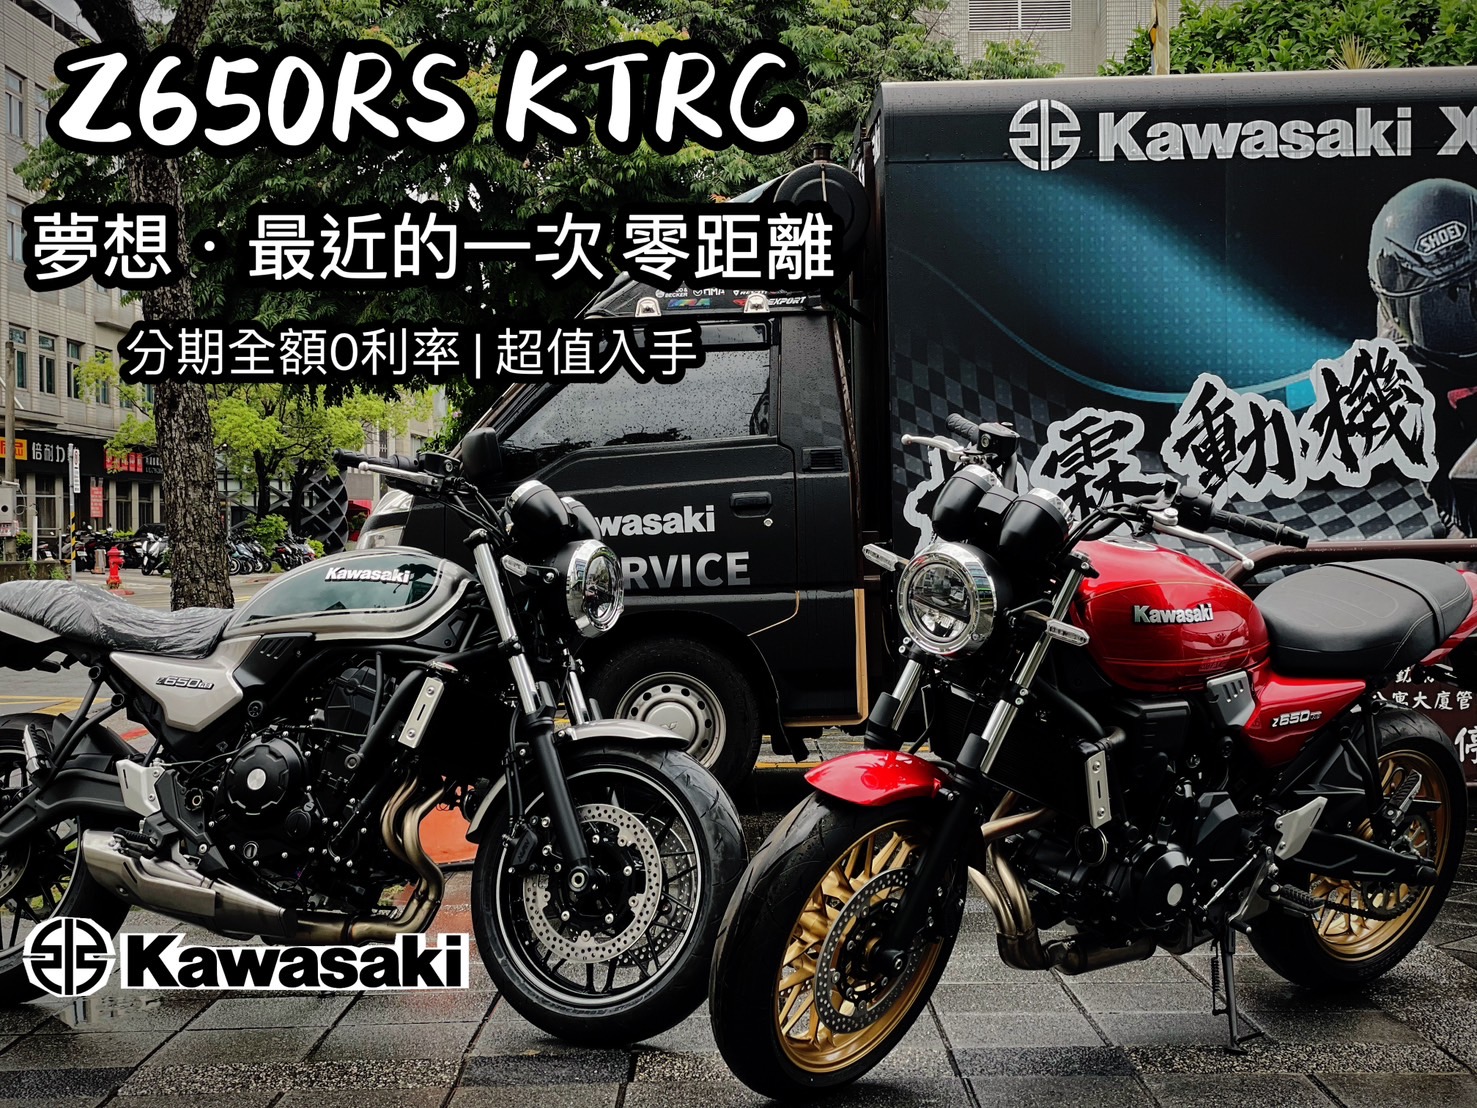 【柏霖動機Kawasak職人-阿弘】KAWASAKI Z650 - 「Webike-摩托車市」 台灣 Kawasaki 內湖展示中心 Z650RS KTRC 